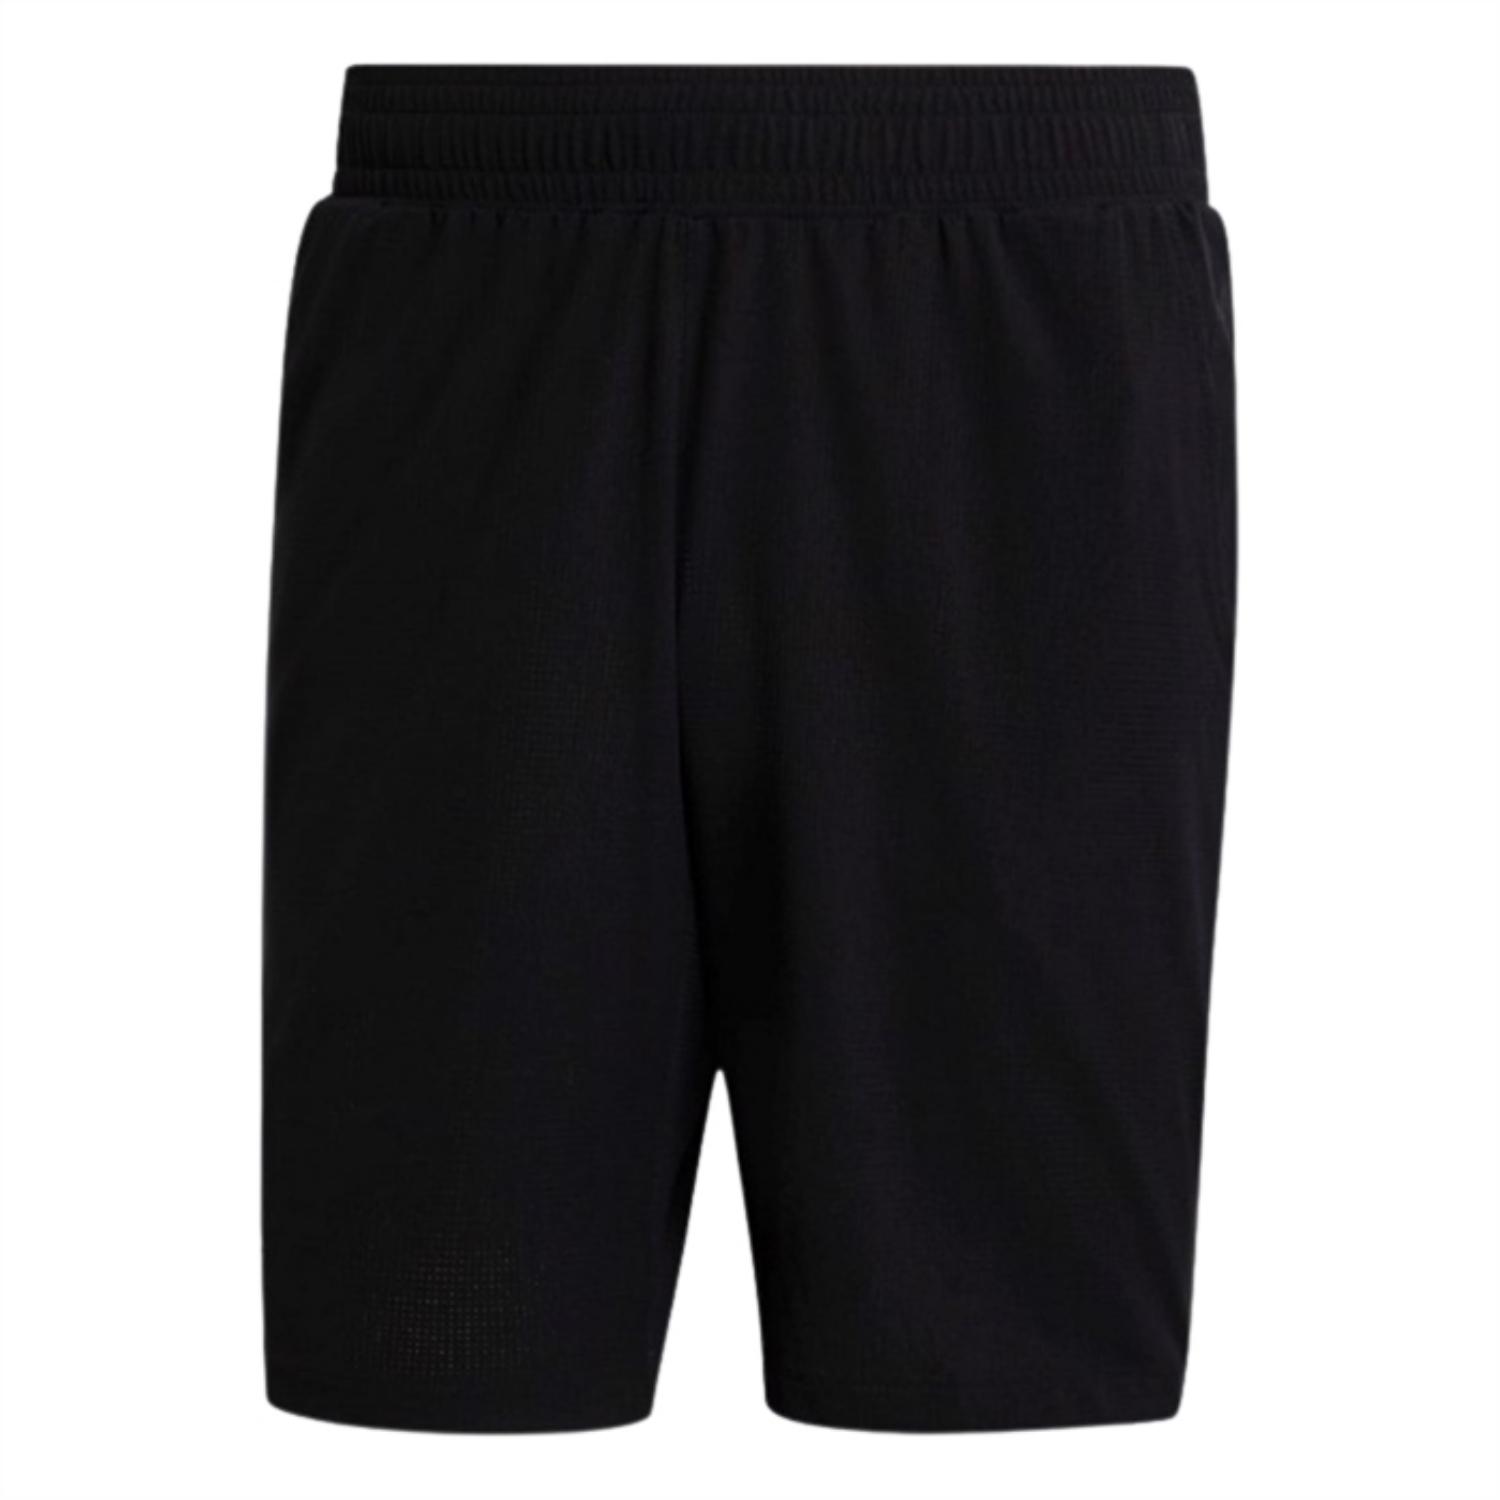 Adidas Ergo Shorts Black Sort Shorts XL